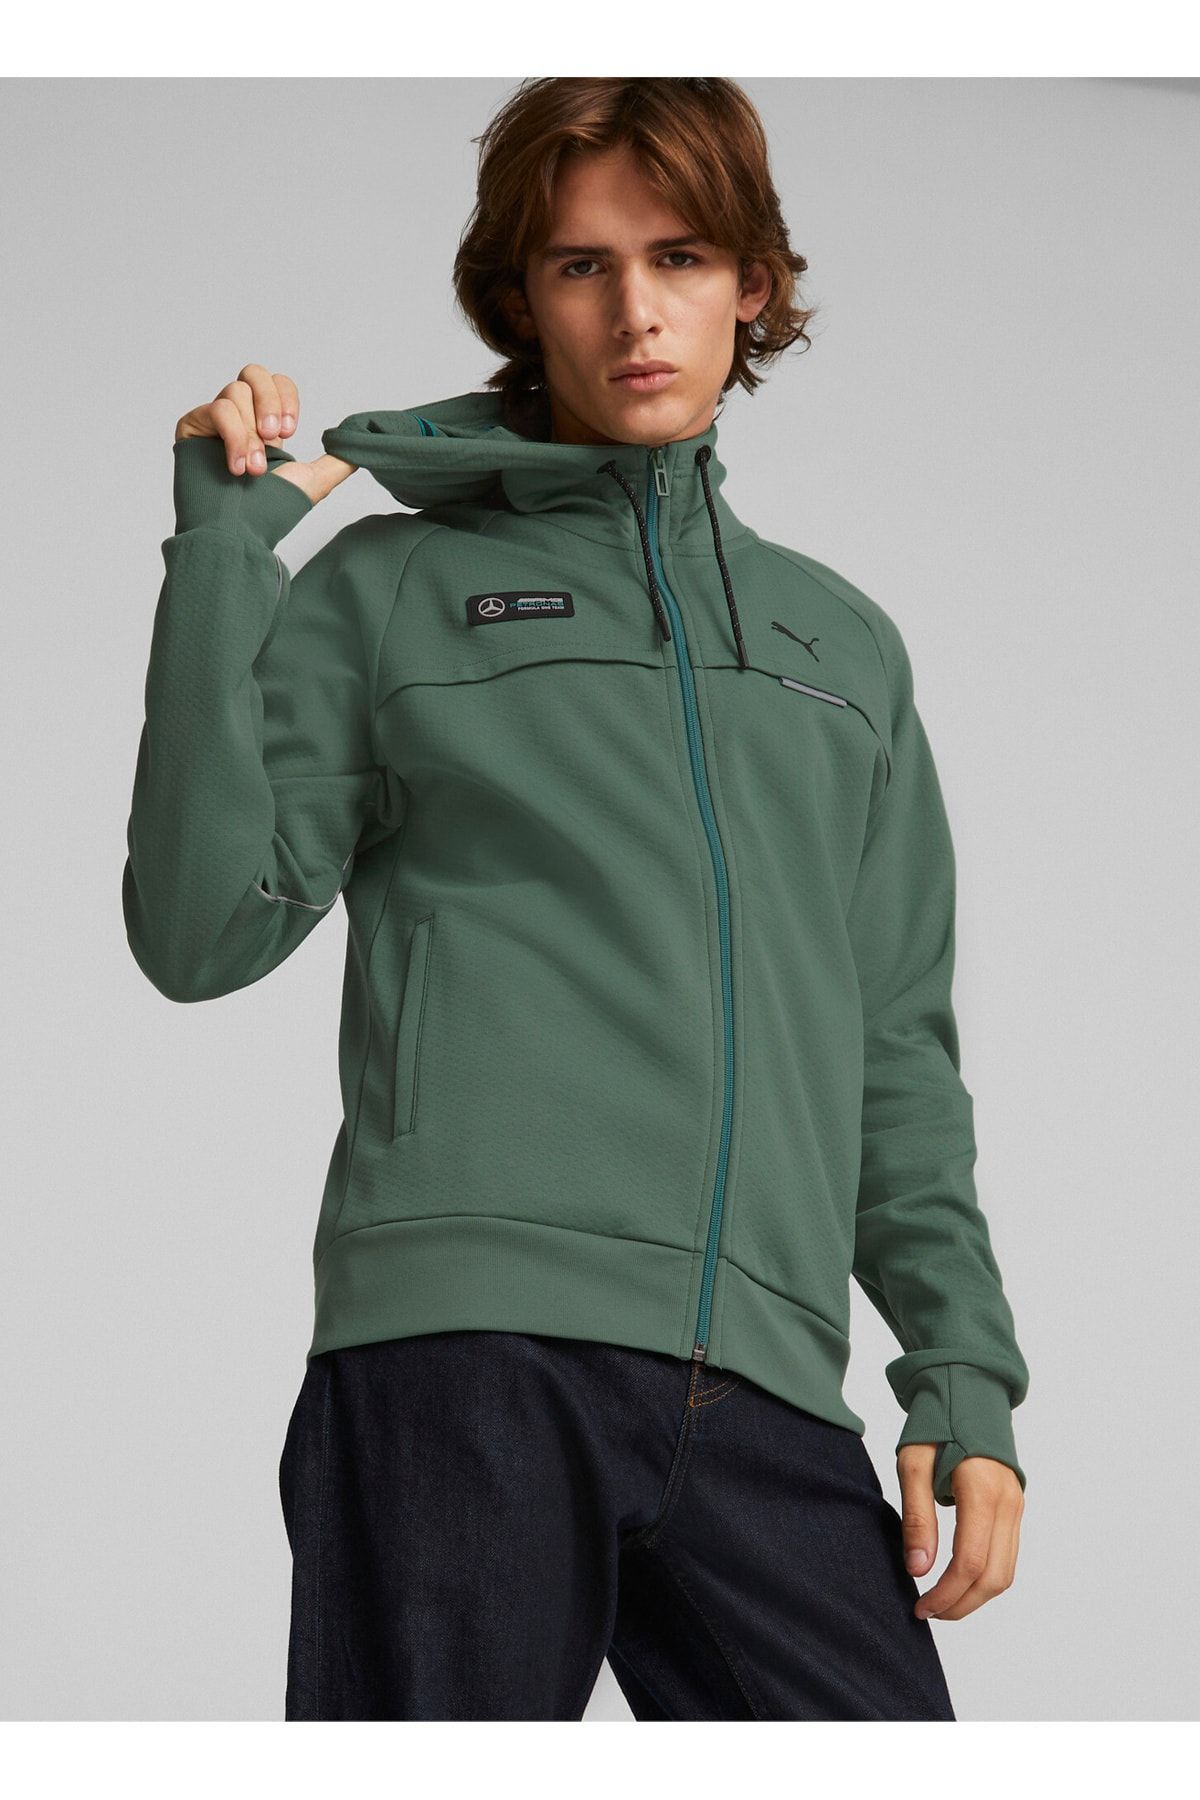 Puma Zip Ceket, L, Yeşil